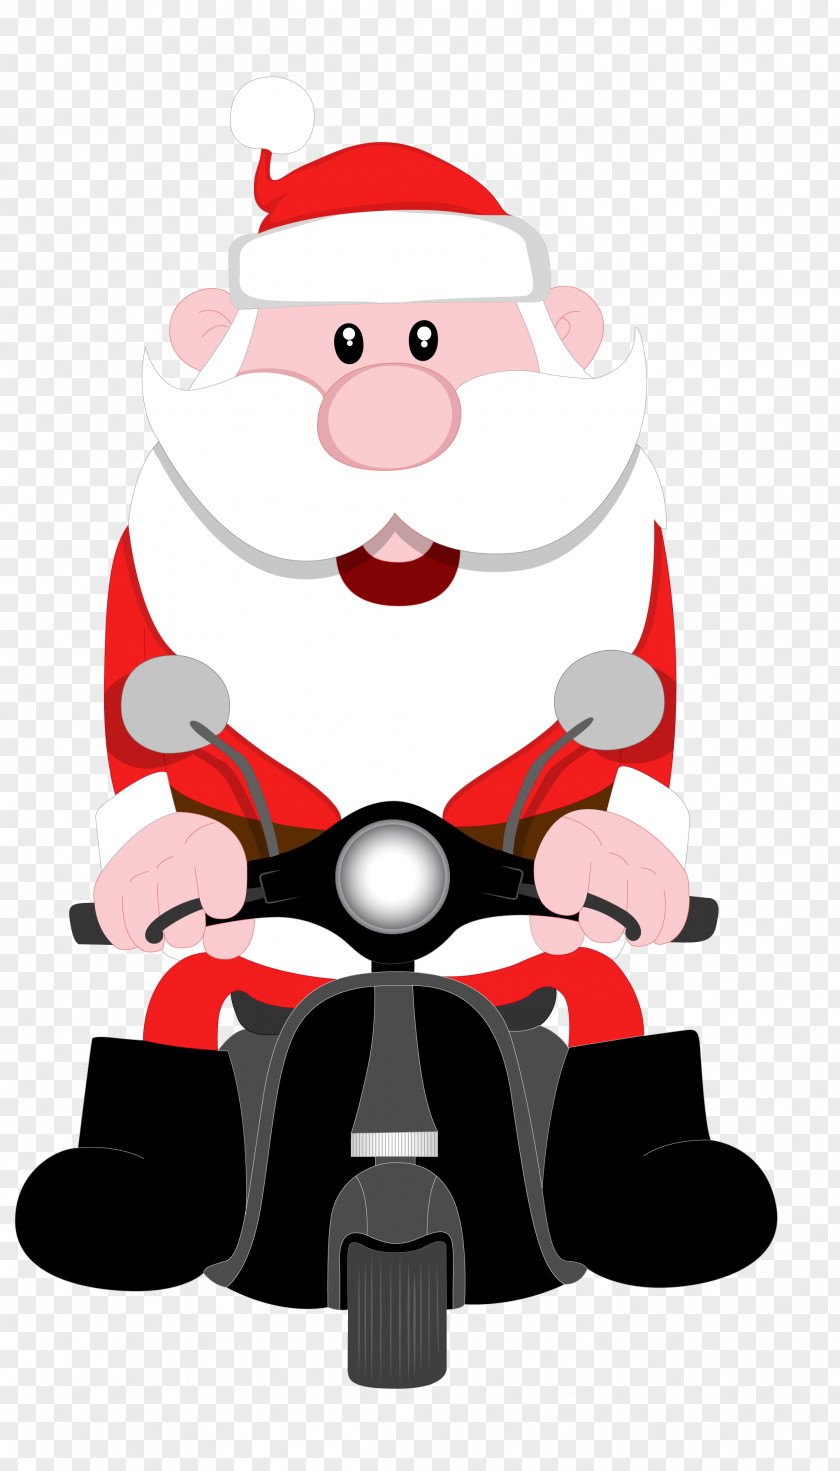 Santa Claus Riding A Motorcycle Cartoon Illustration PNG